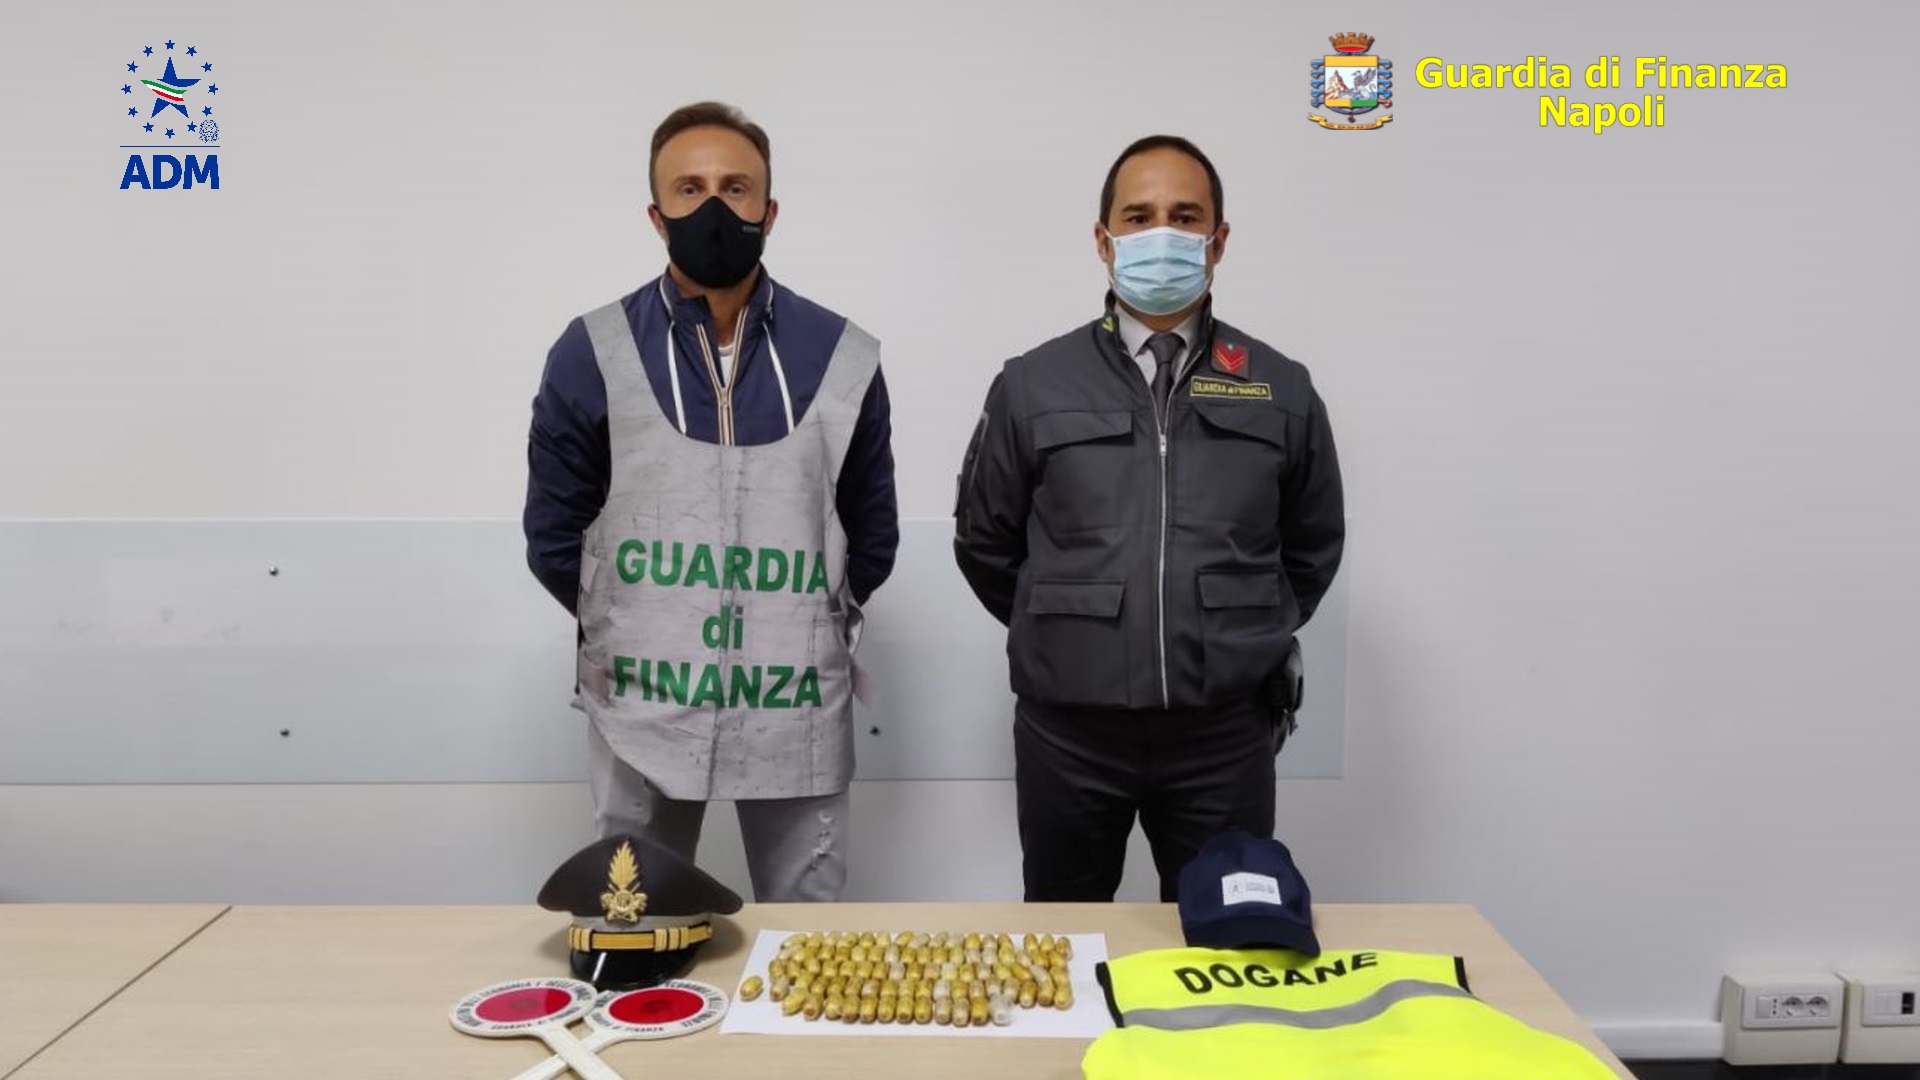 Napoli: arriva all’aeroporto di Capodichino con 1 kg di eroina nell’addome